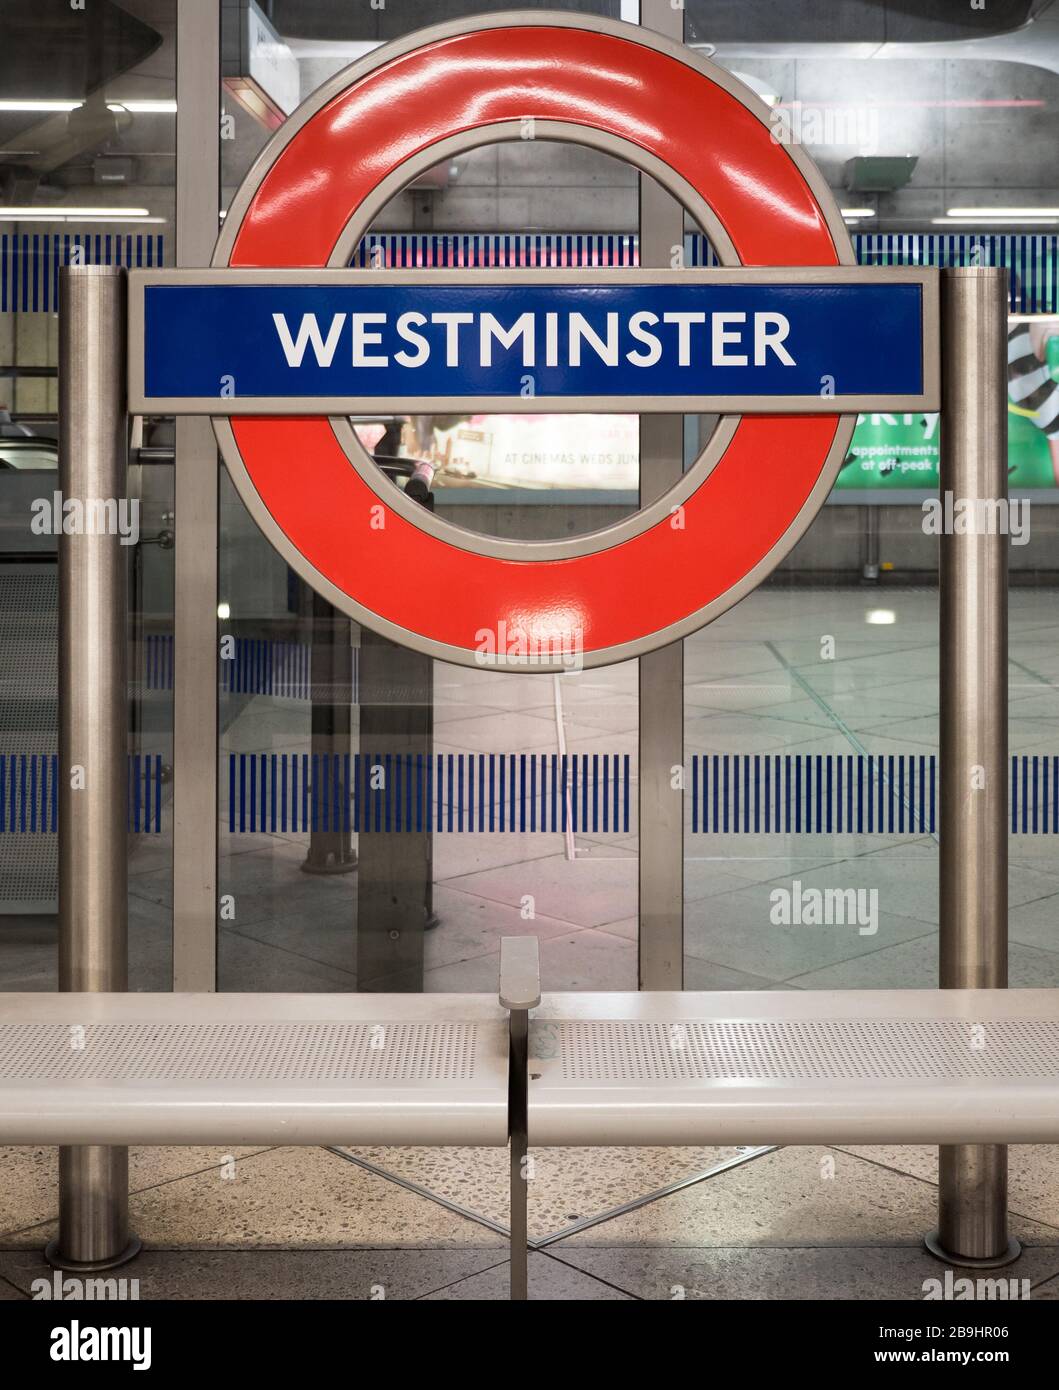 Panneau de la station de métro Westminster. Rond-point de métro de Londres sur la plate-forme de la station de métro Westminster sur la ligne Jubilee. Banque D'Images